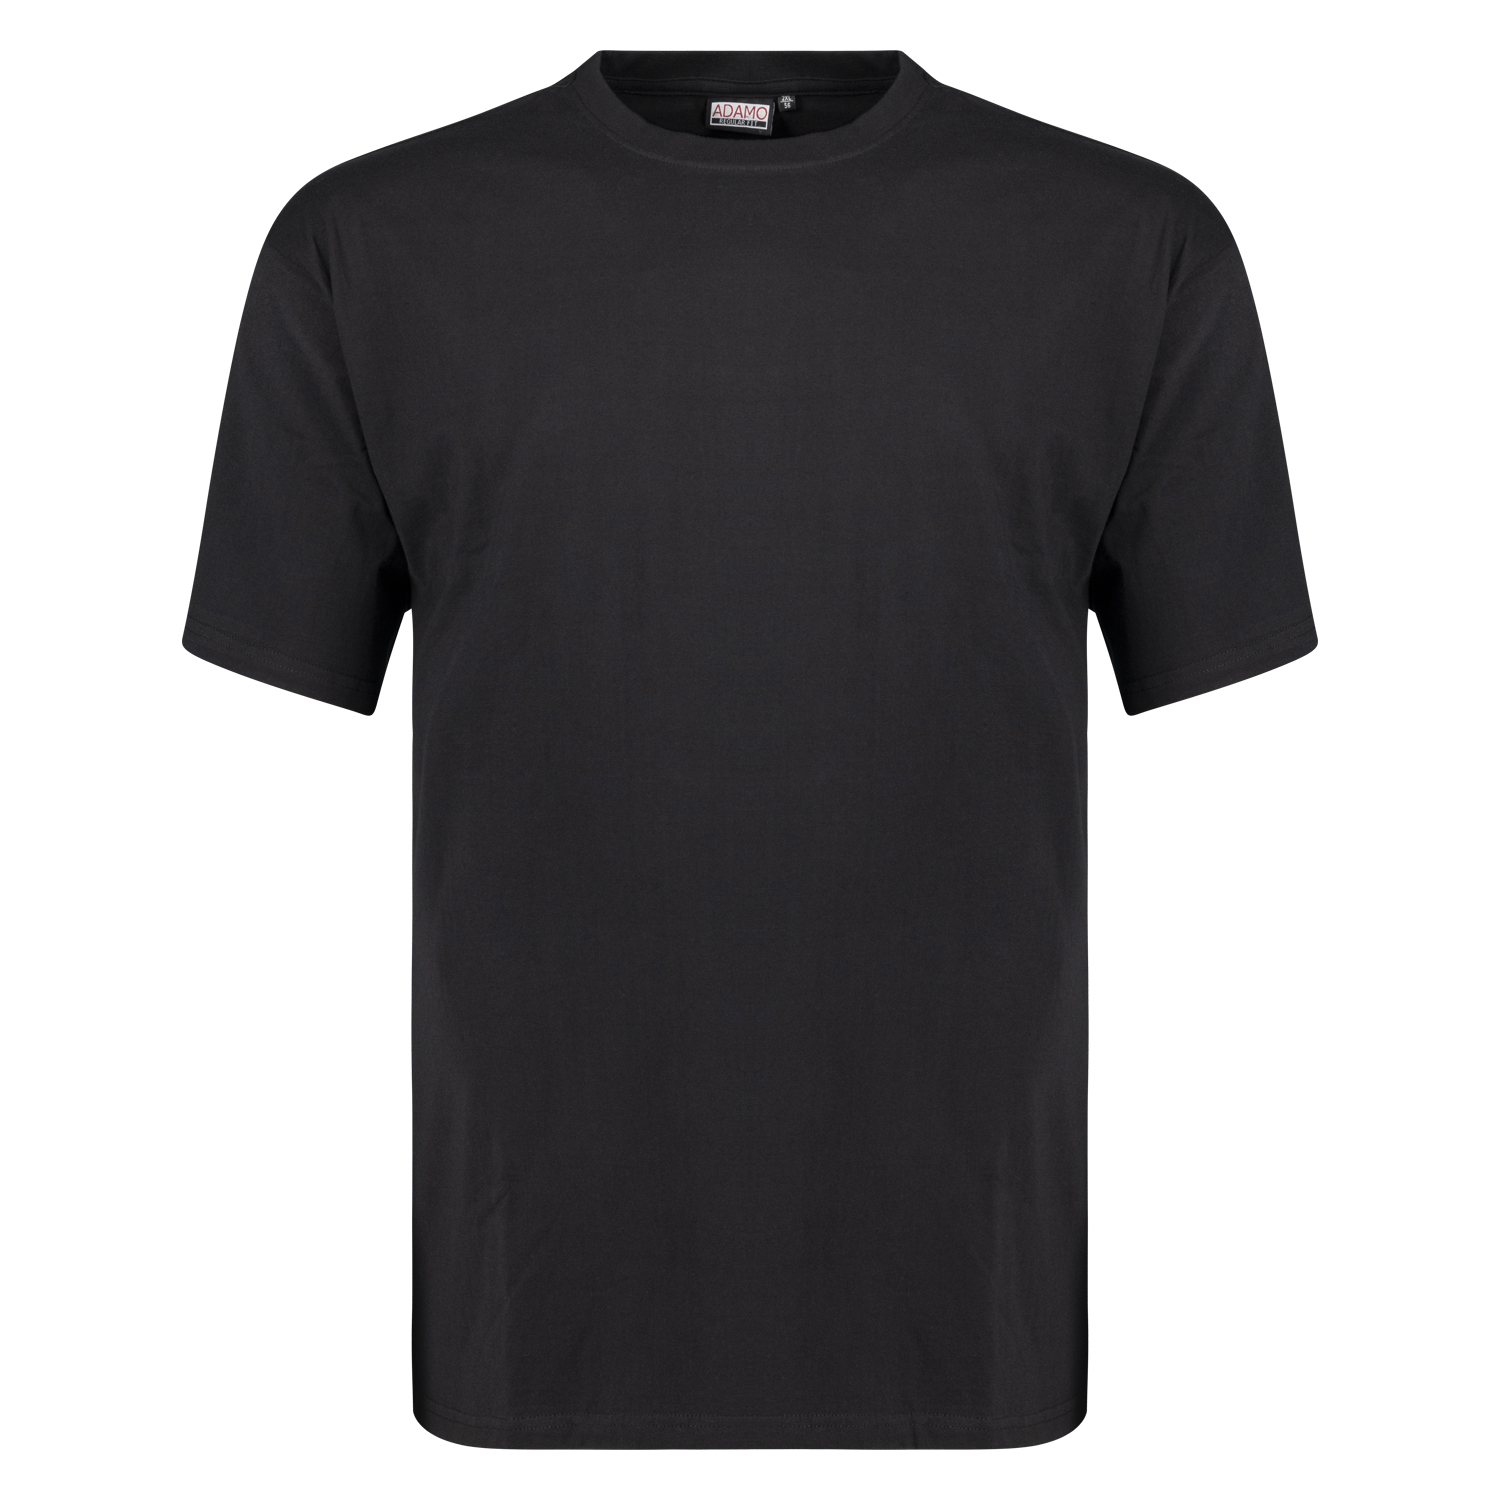 T-shirt Regular Fit noir série Bud by ADAMO jusqu'à la grande taille 12XL - Heavy Jersey